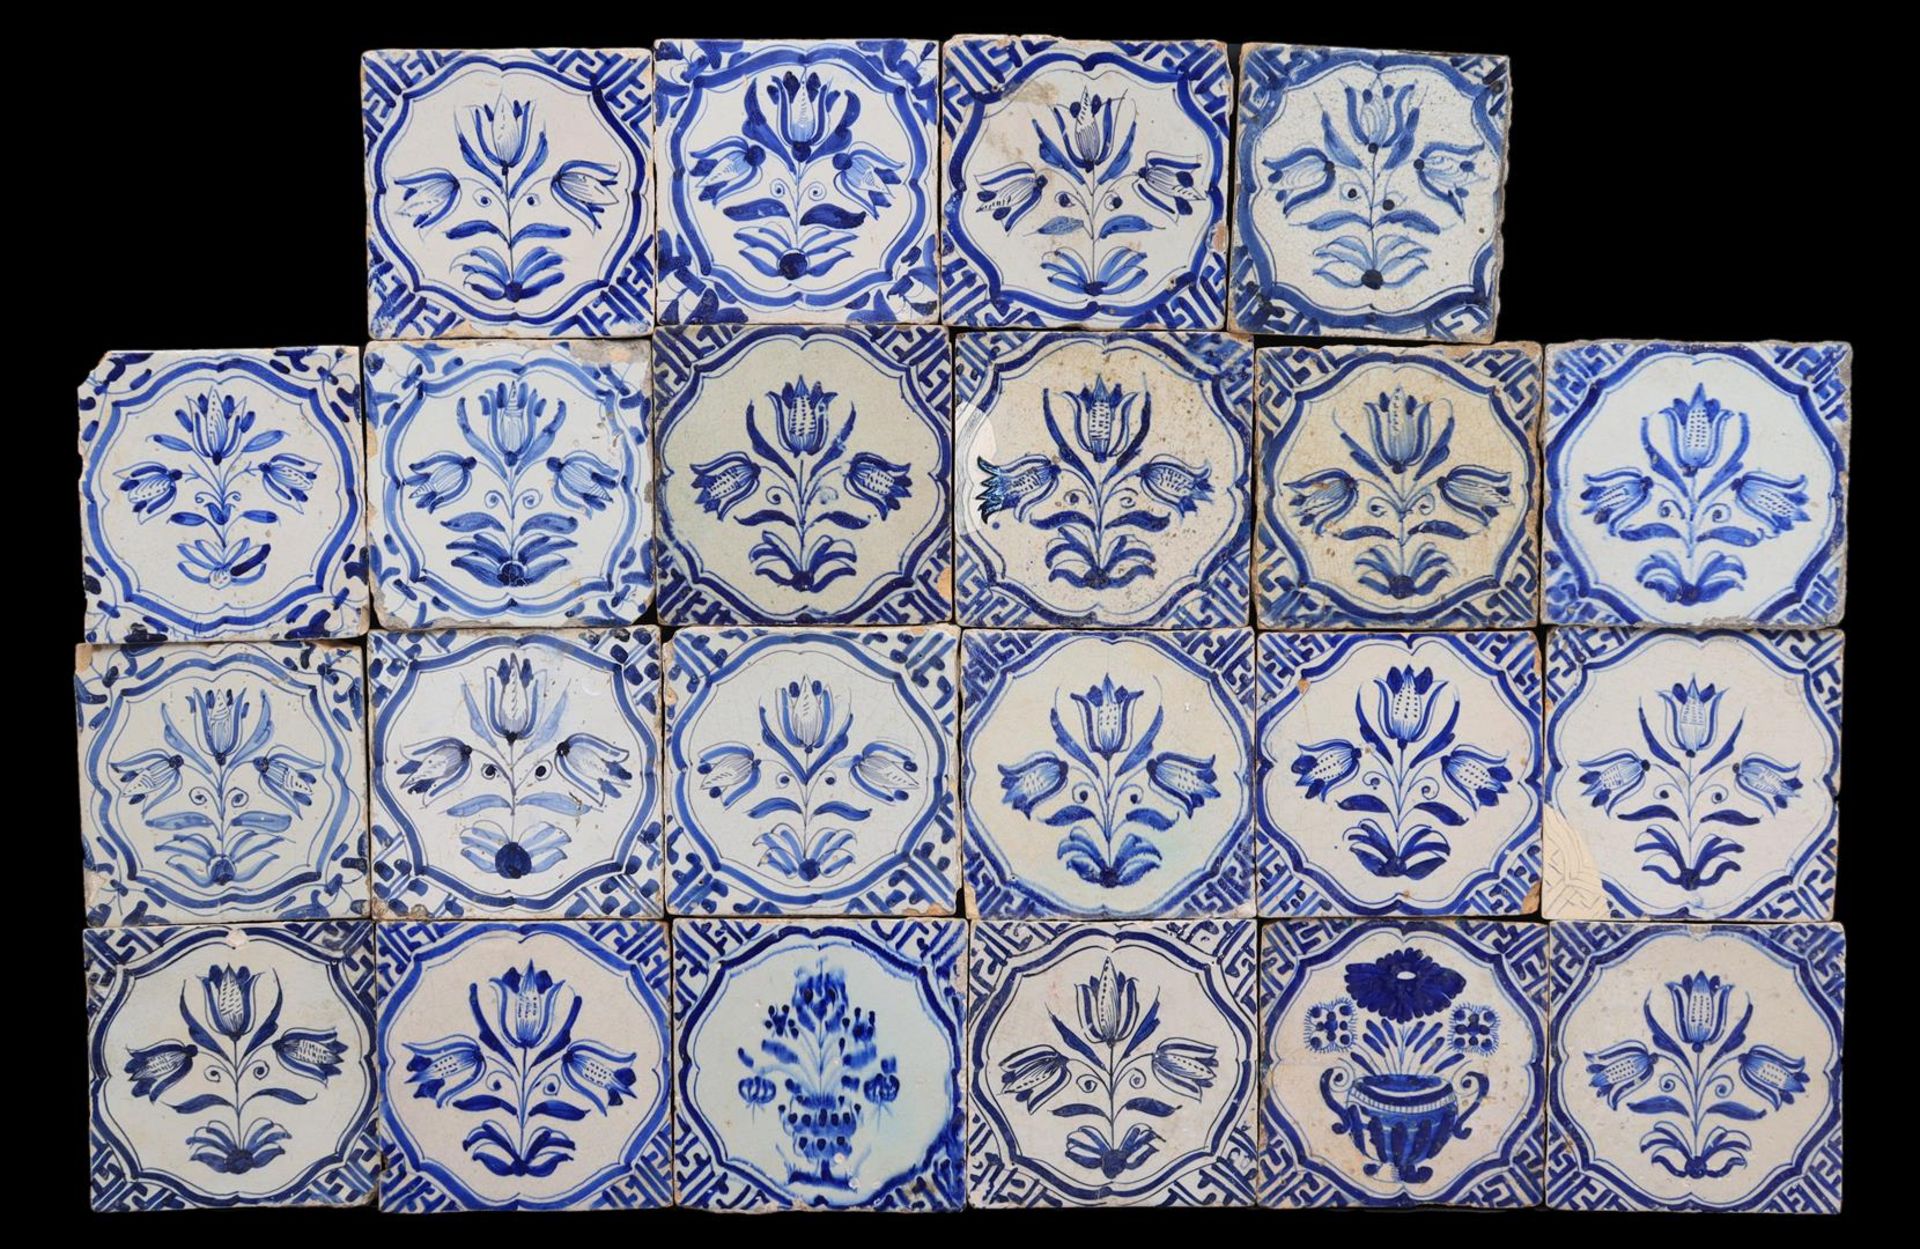 22 glazed earthenware tiles